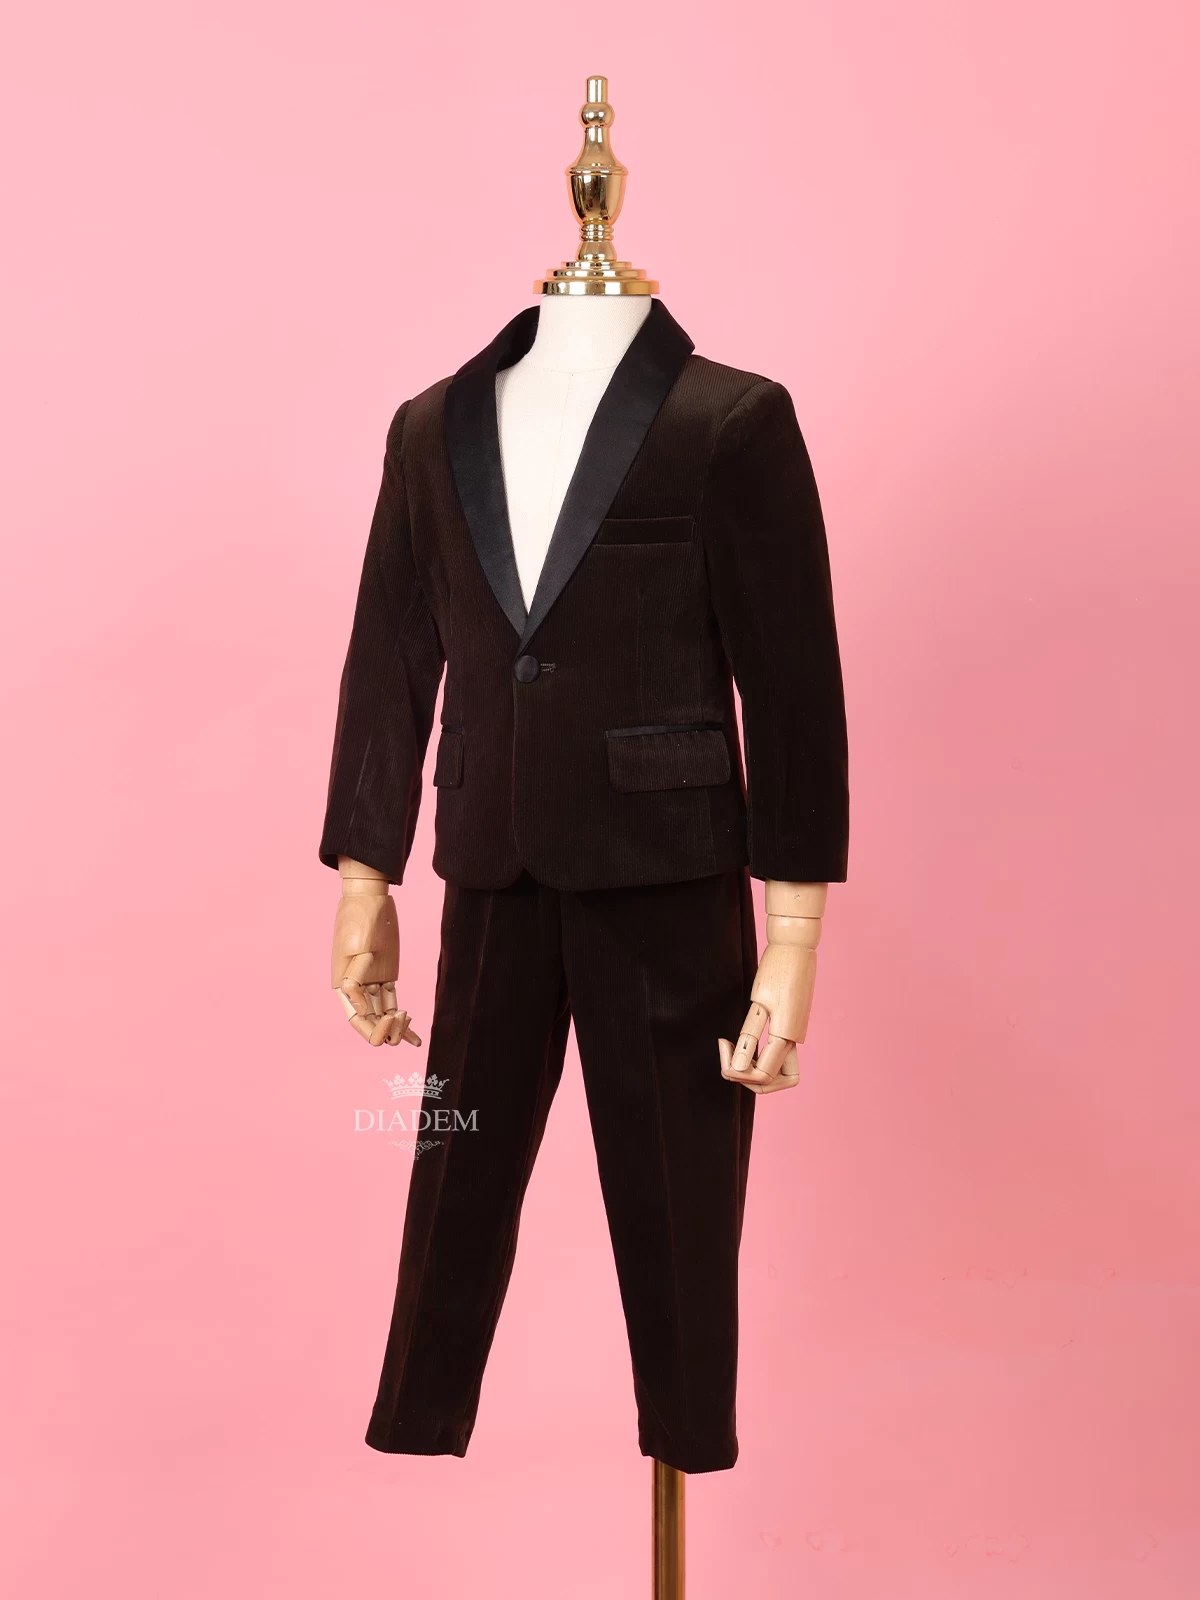 Dark Brown Velvet Tuxedo Coat And Suit For Boys